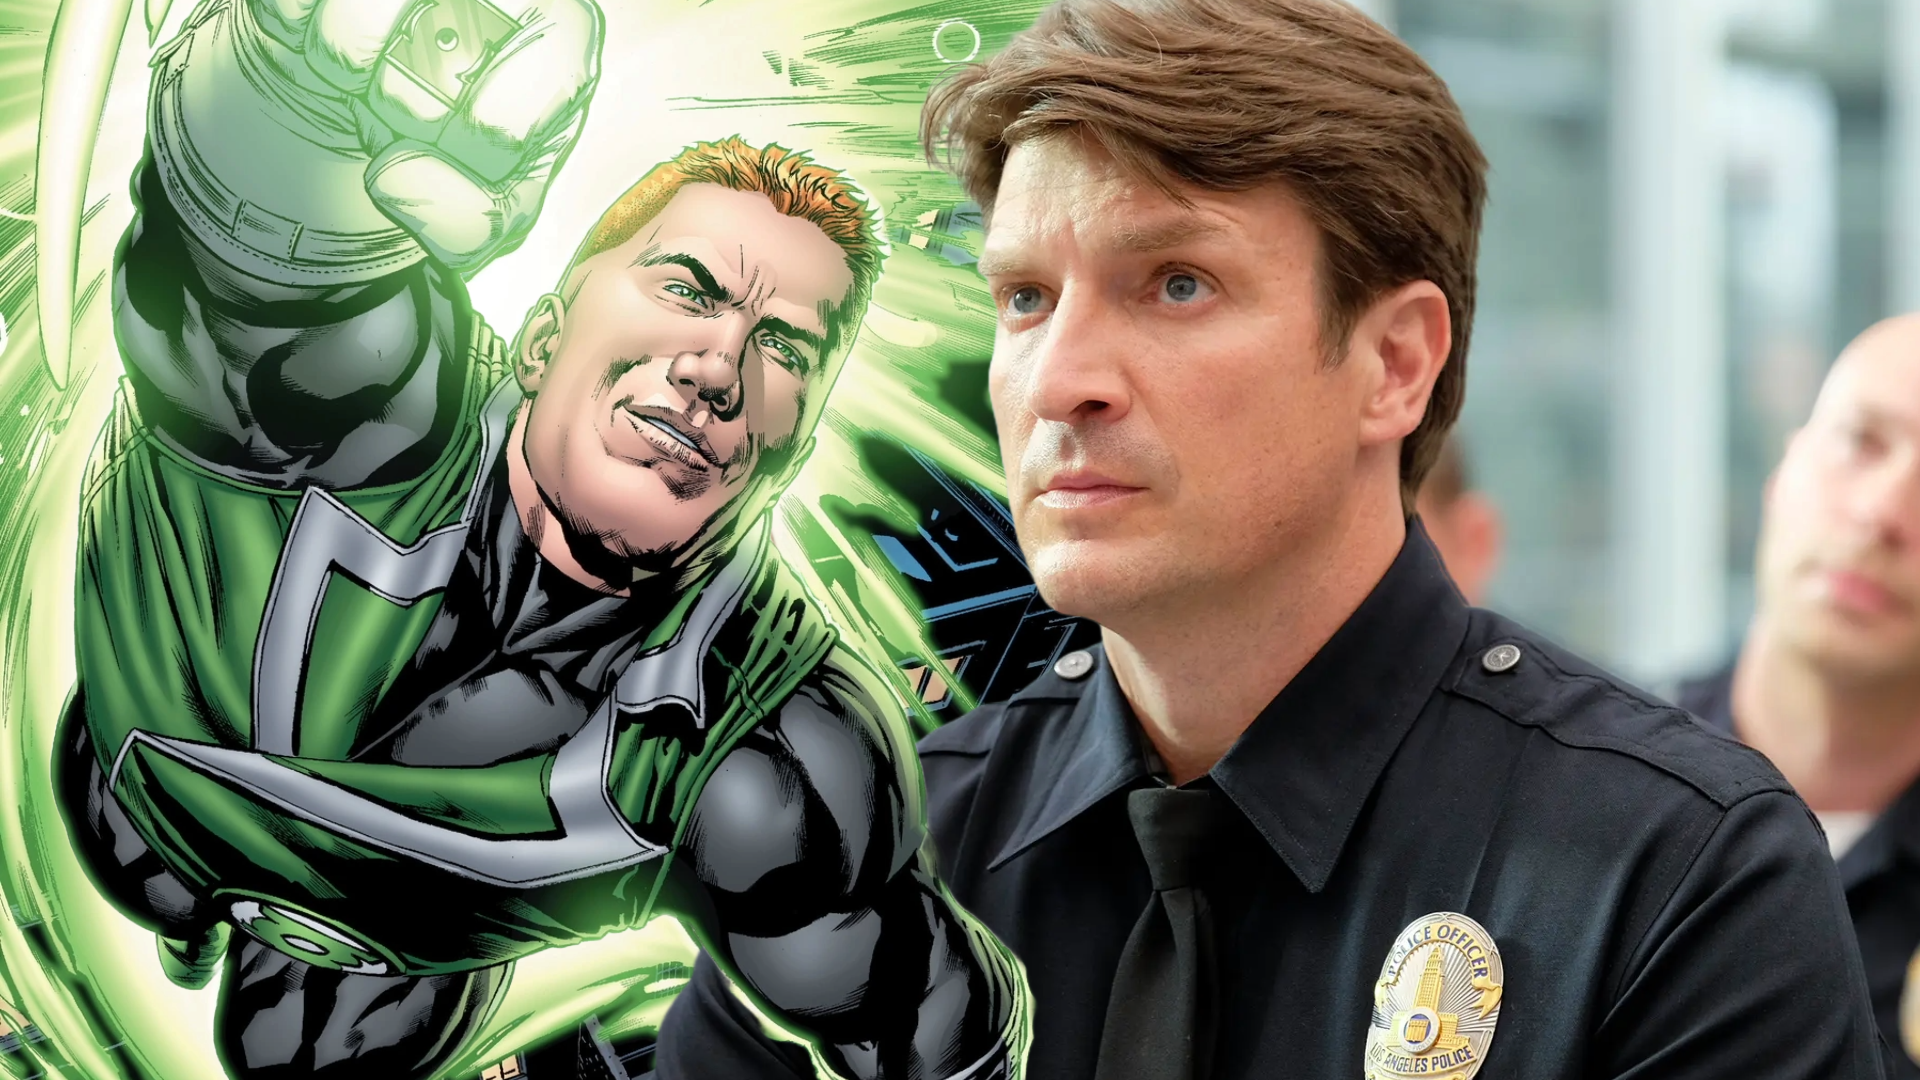 Ator Nathan Filion ao lado do personagem Lanterna Verde Guy Gardner